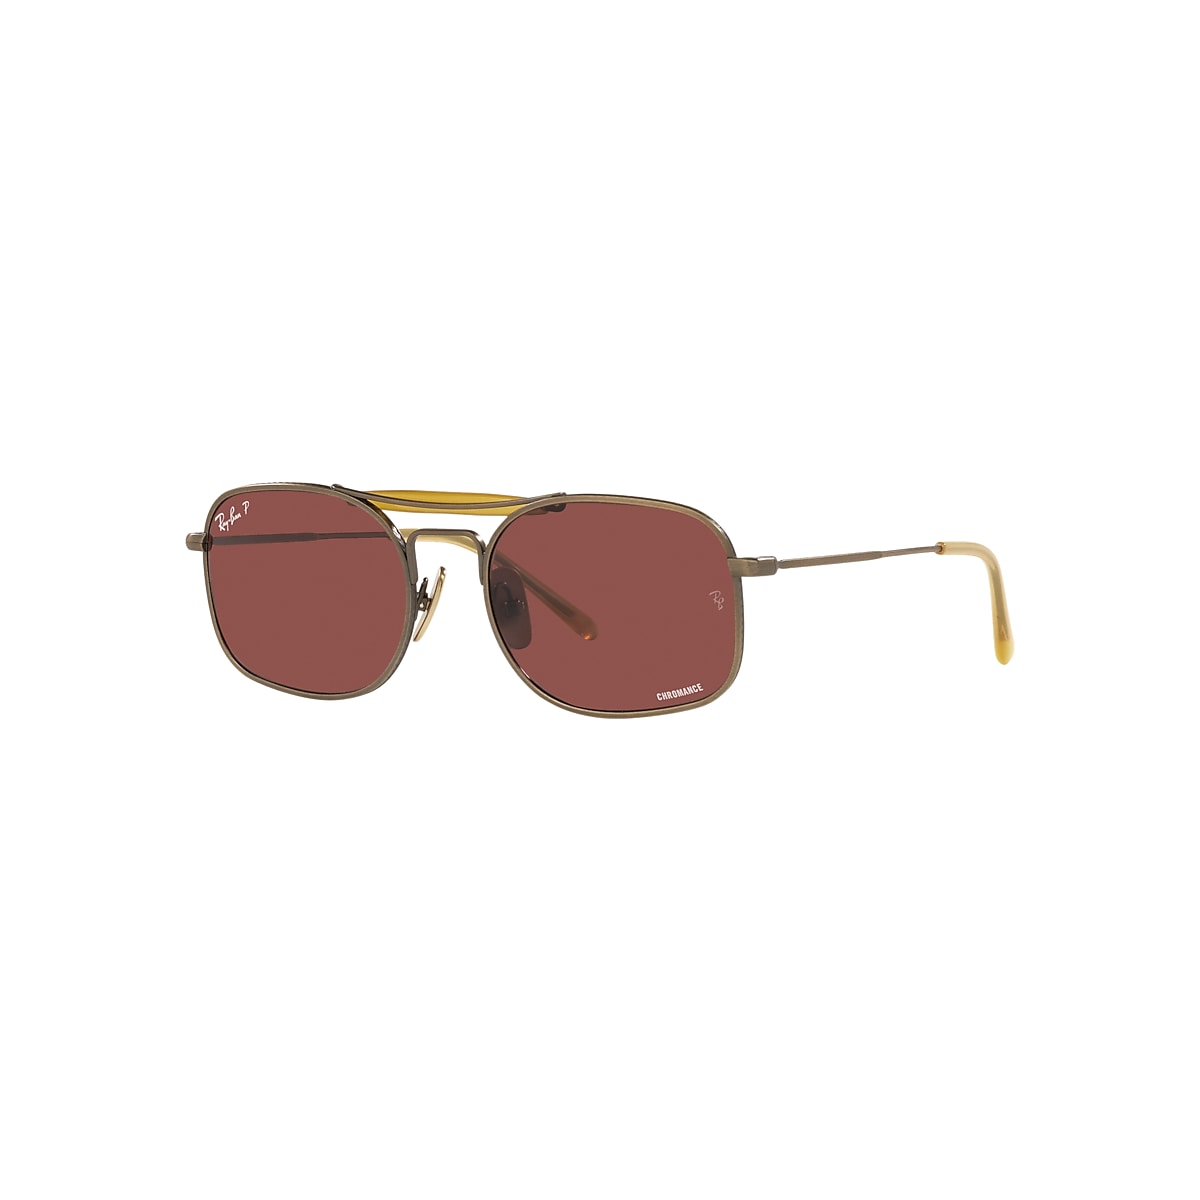 RB8062 TITANIUM Sunglasses in Antique Gold and Violet - RB8062 